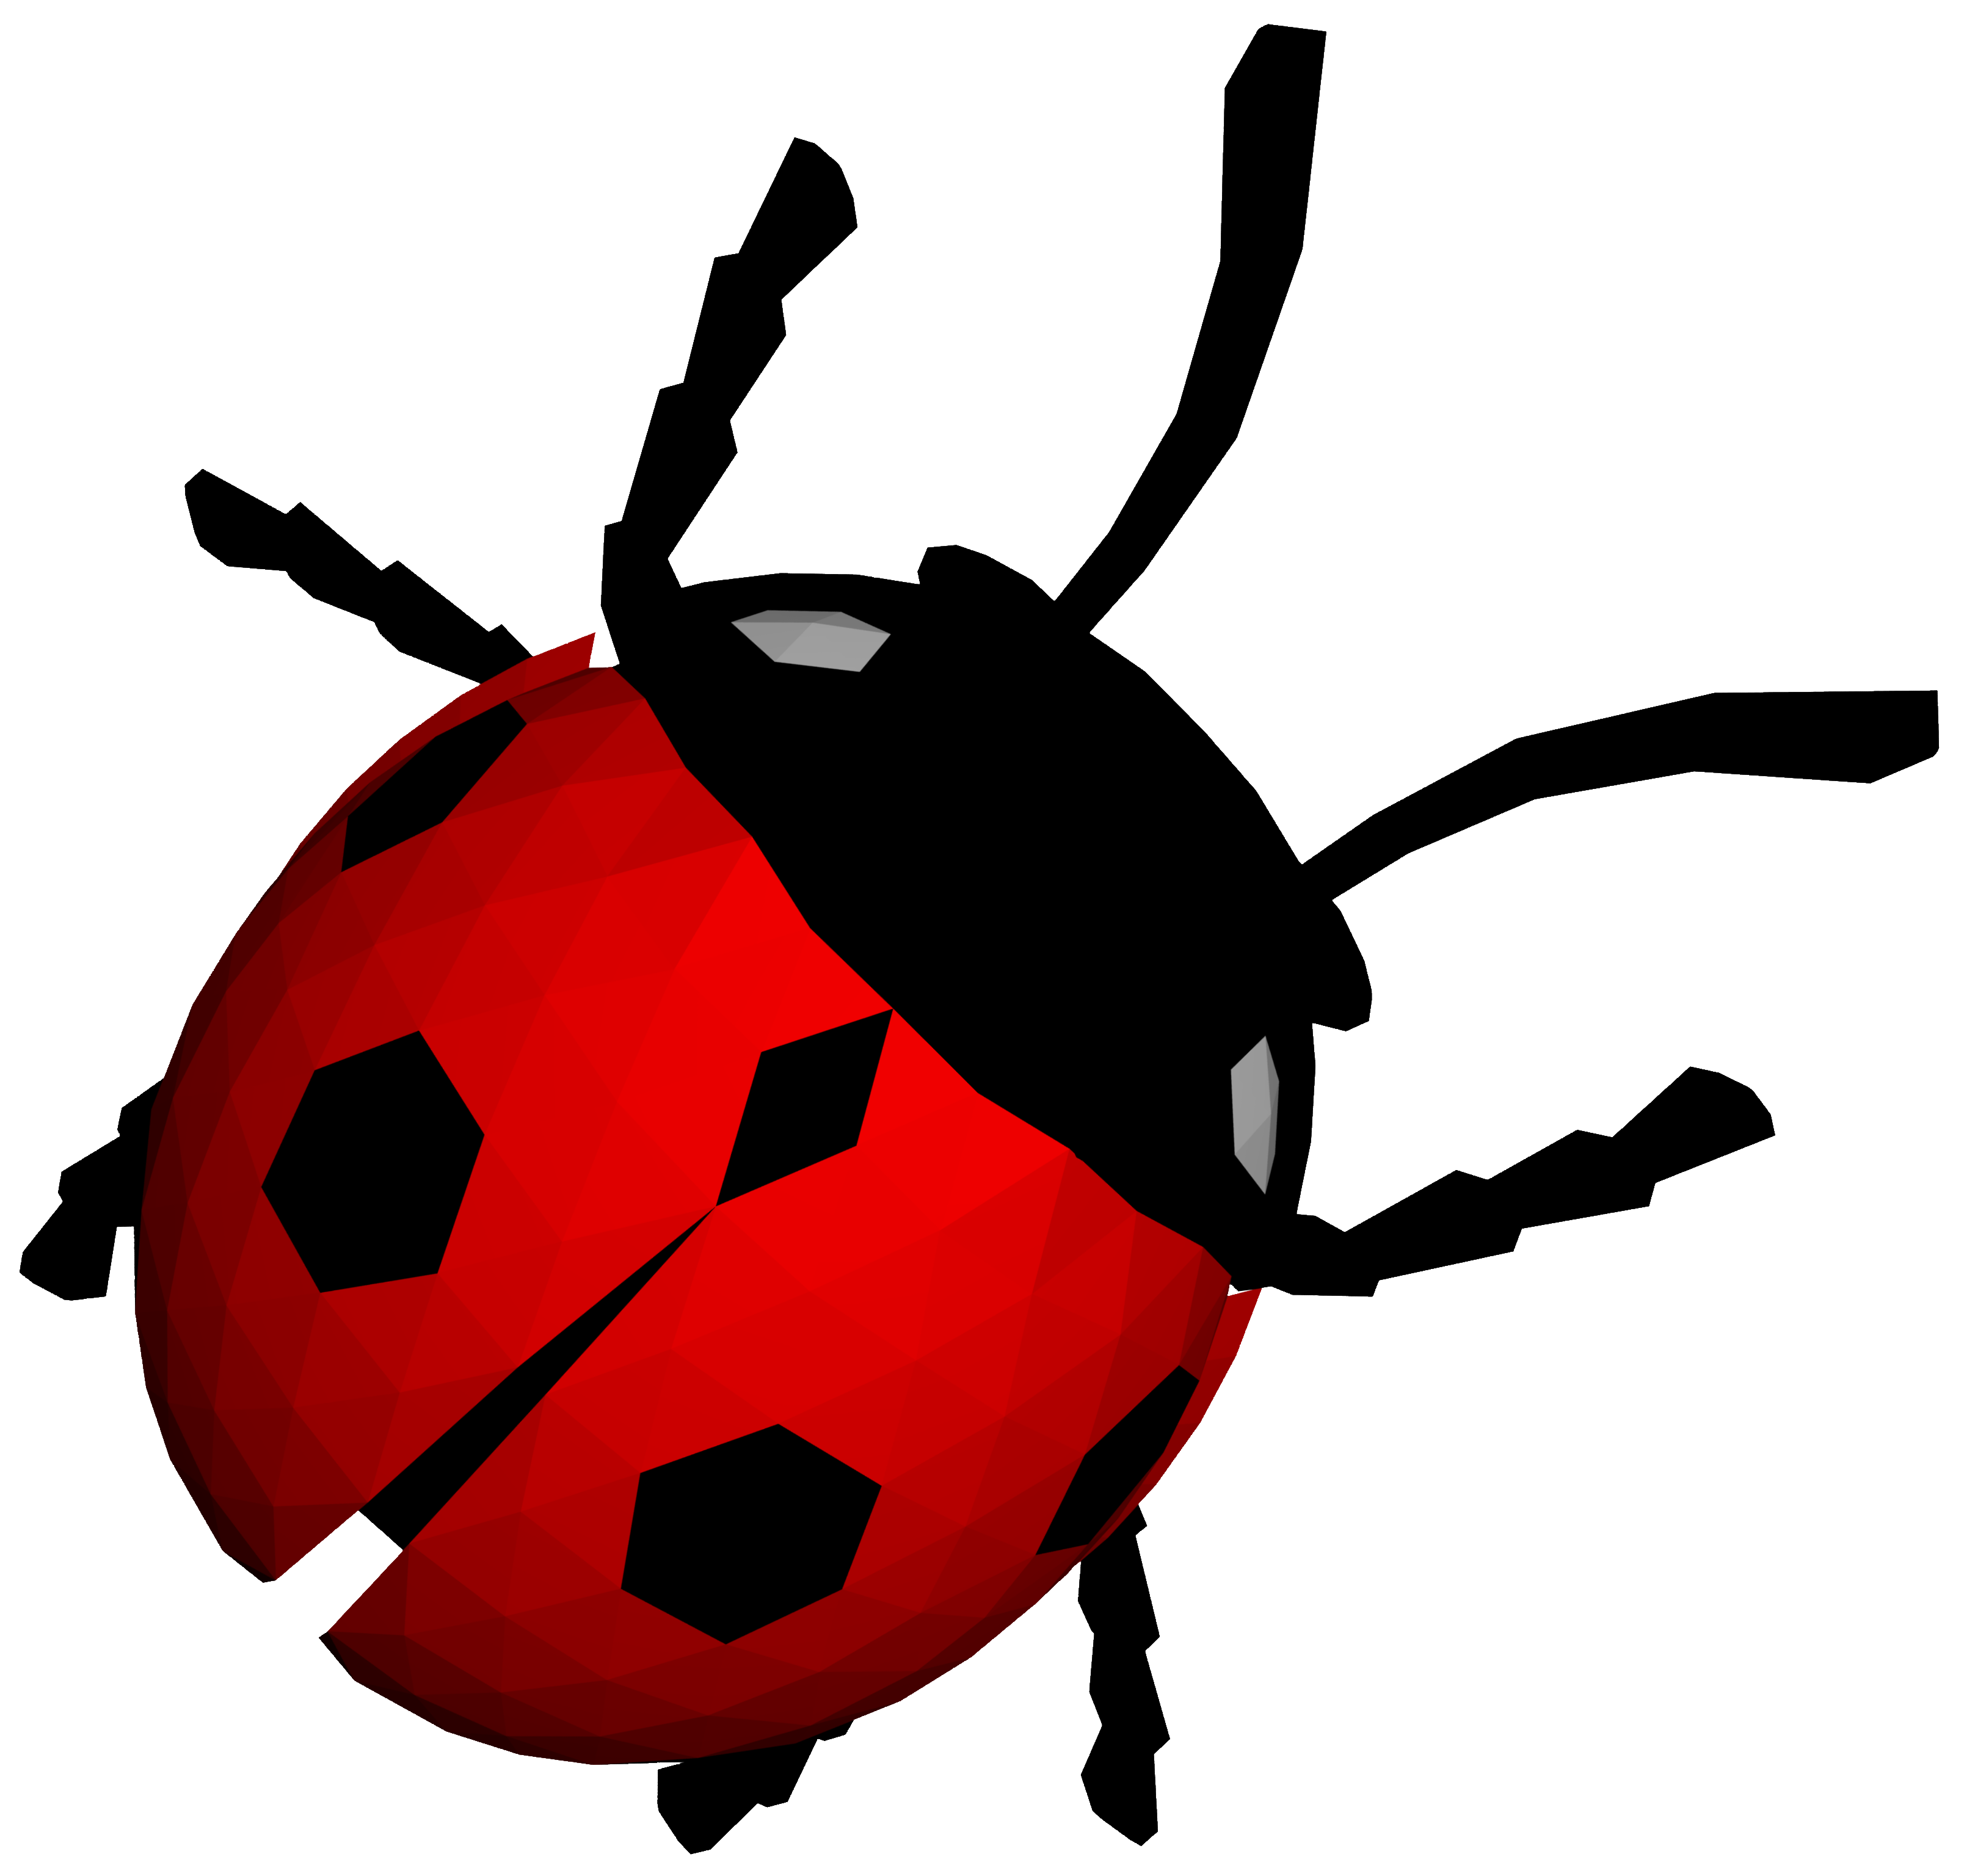 Download Transparent Ladybug File HQ PNG Image | FreePNGImg